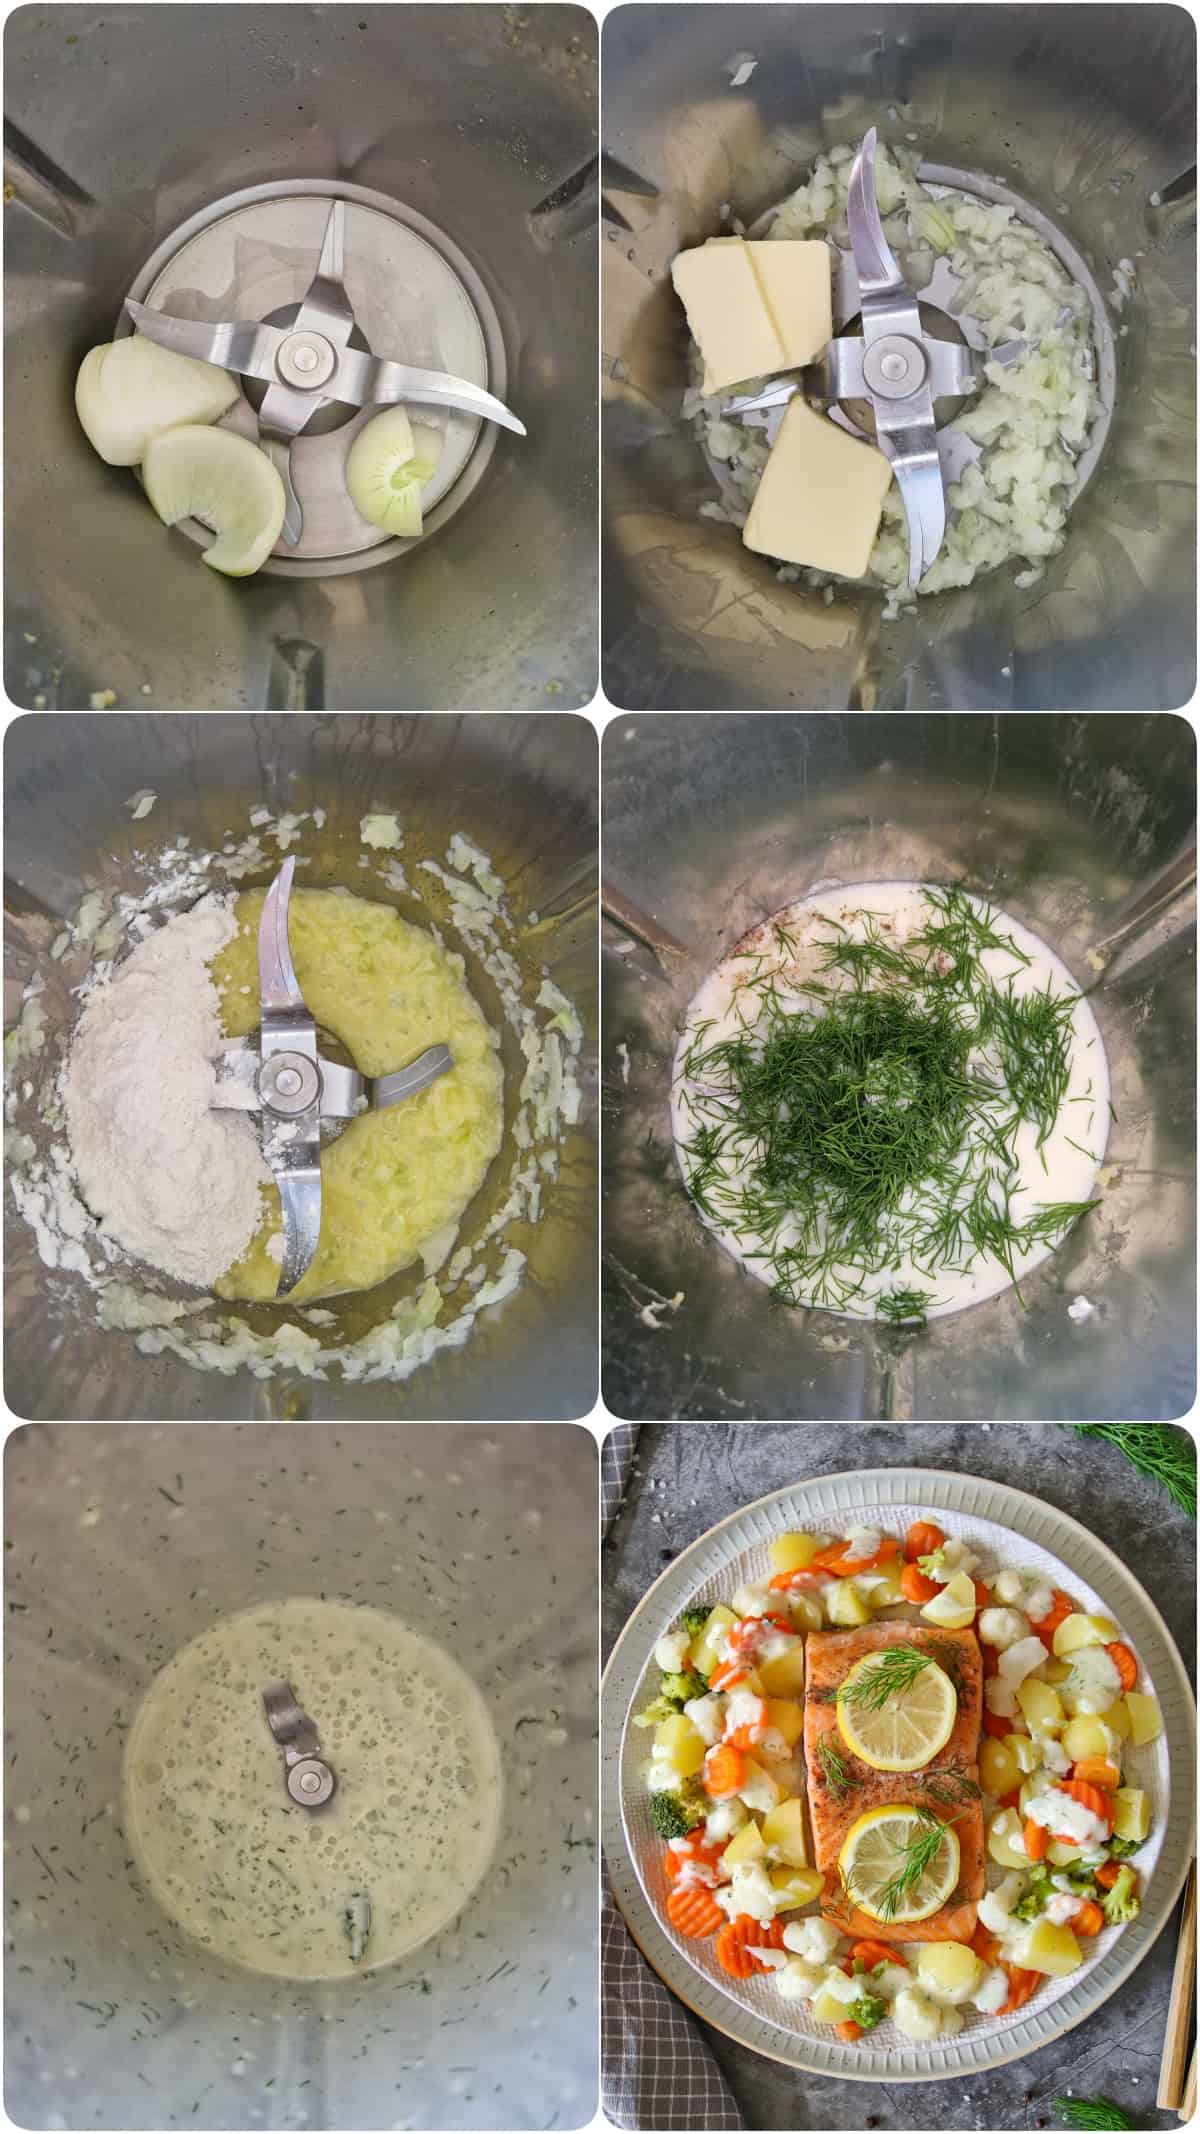 Eine Collage der Zubereitungsschritte für Lachsfilet mit Gemüse, Kartoffeln und Dillsoße.